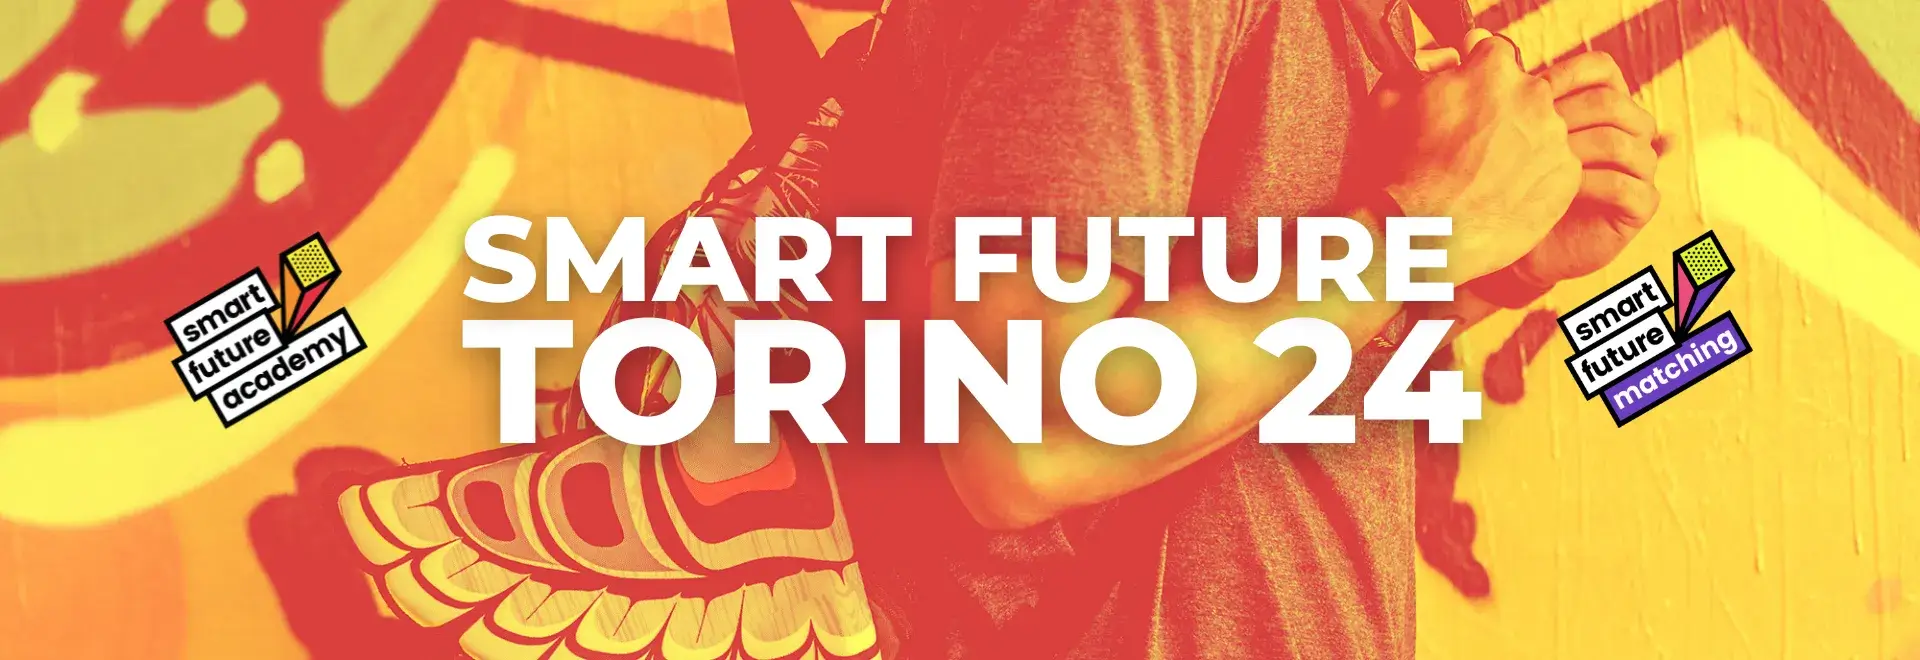 SMART FUTURE <br> TORINO 24